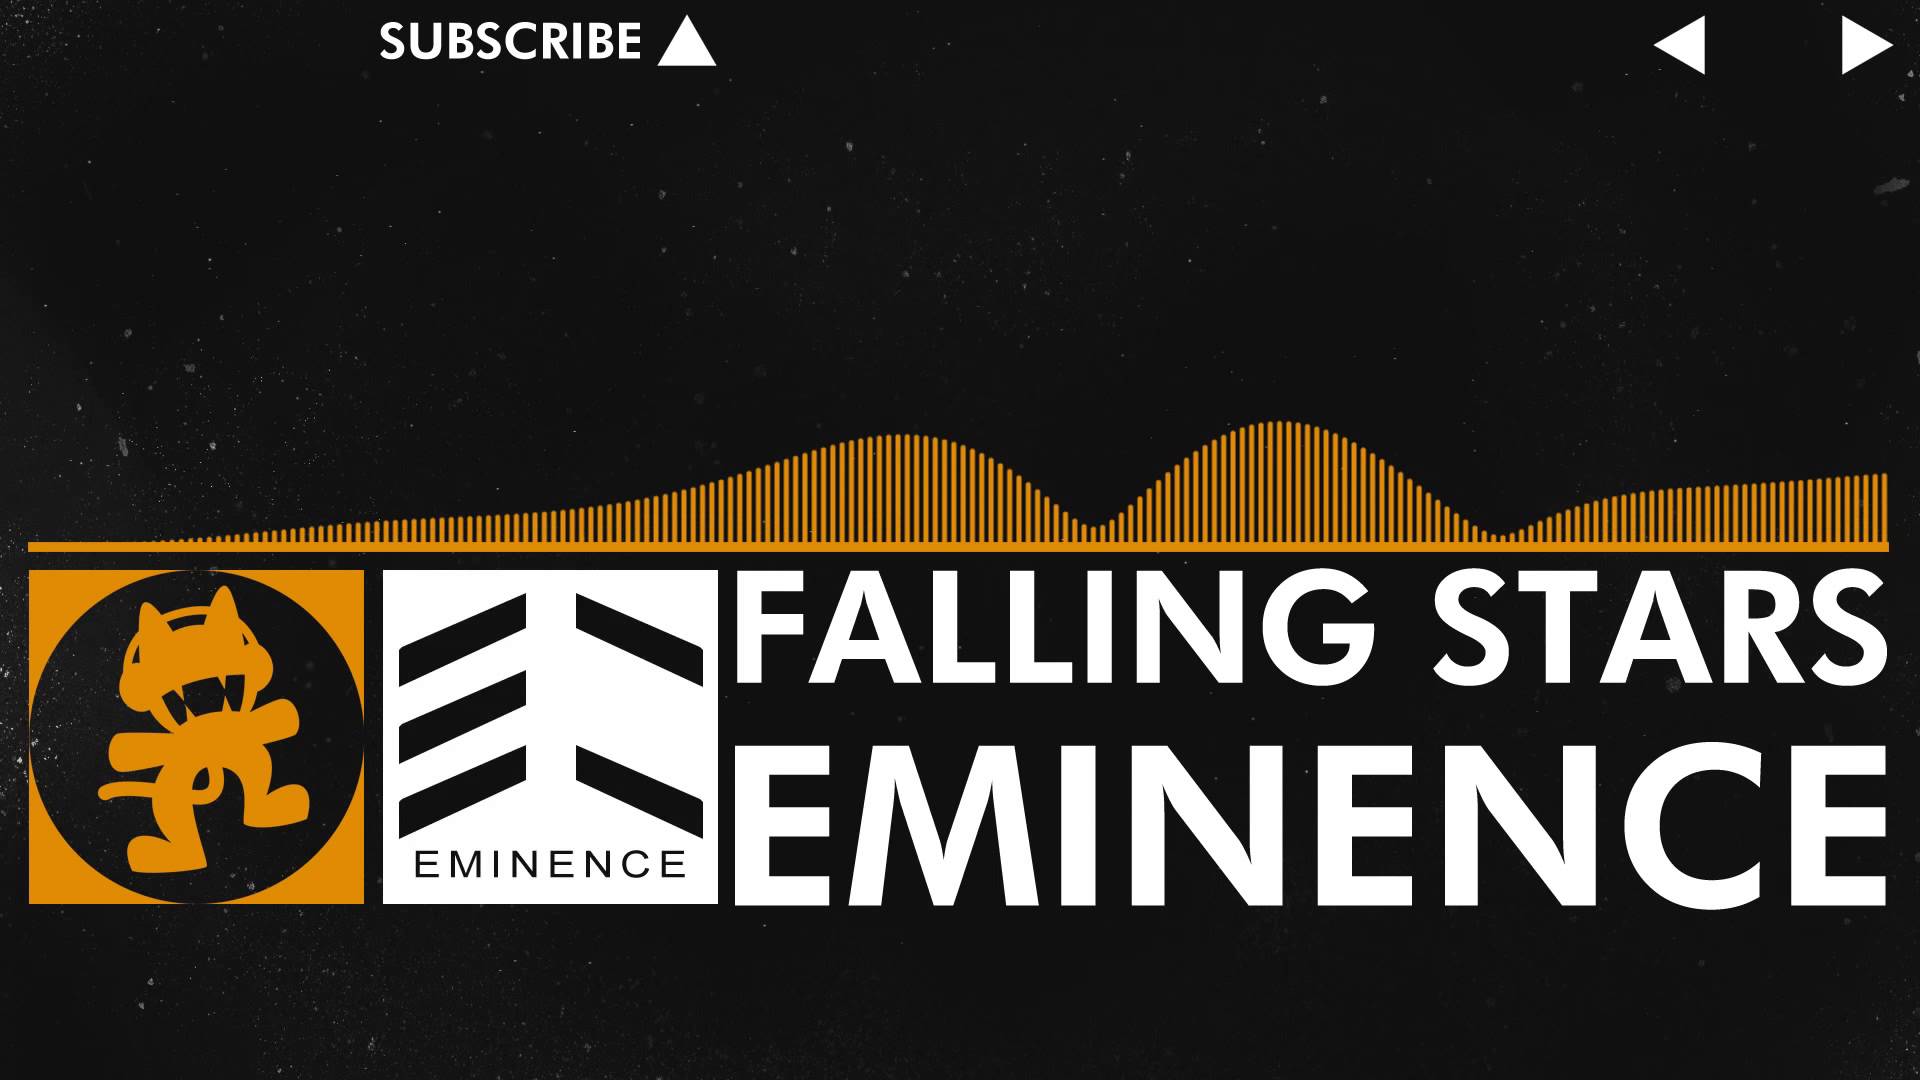 [House] - Eminence - Falling Stars [Monstercat Release]